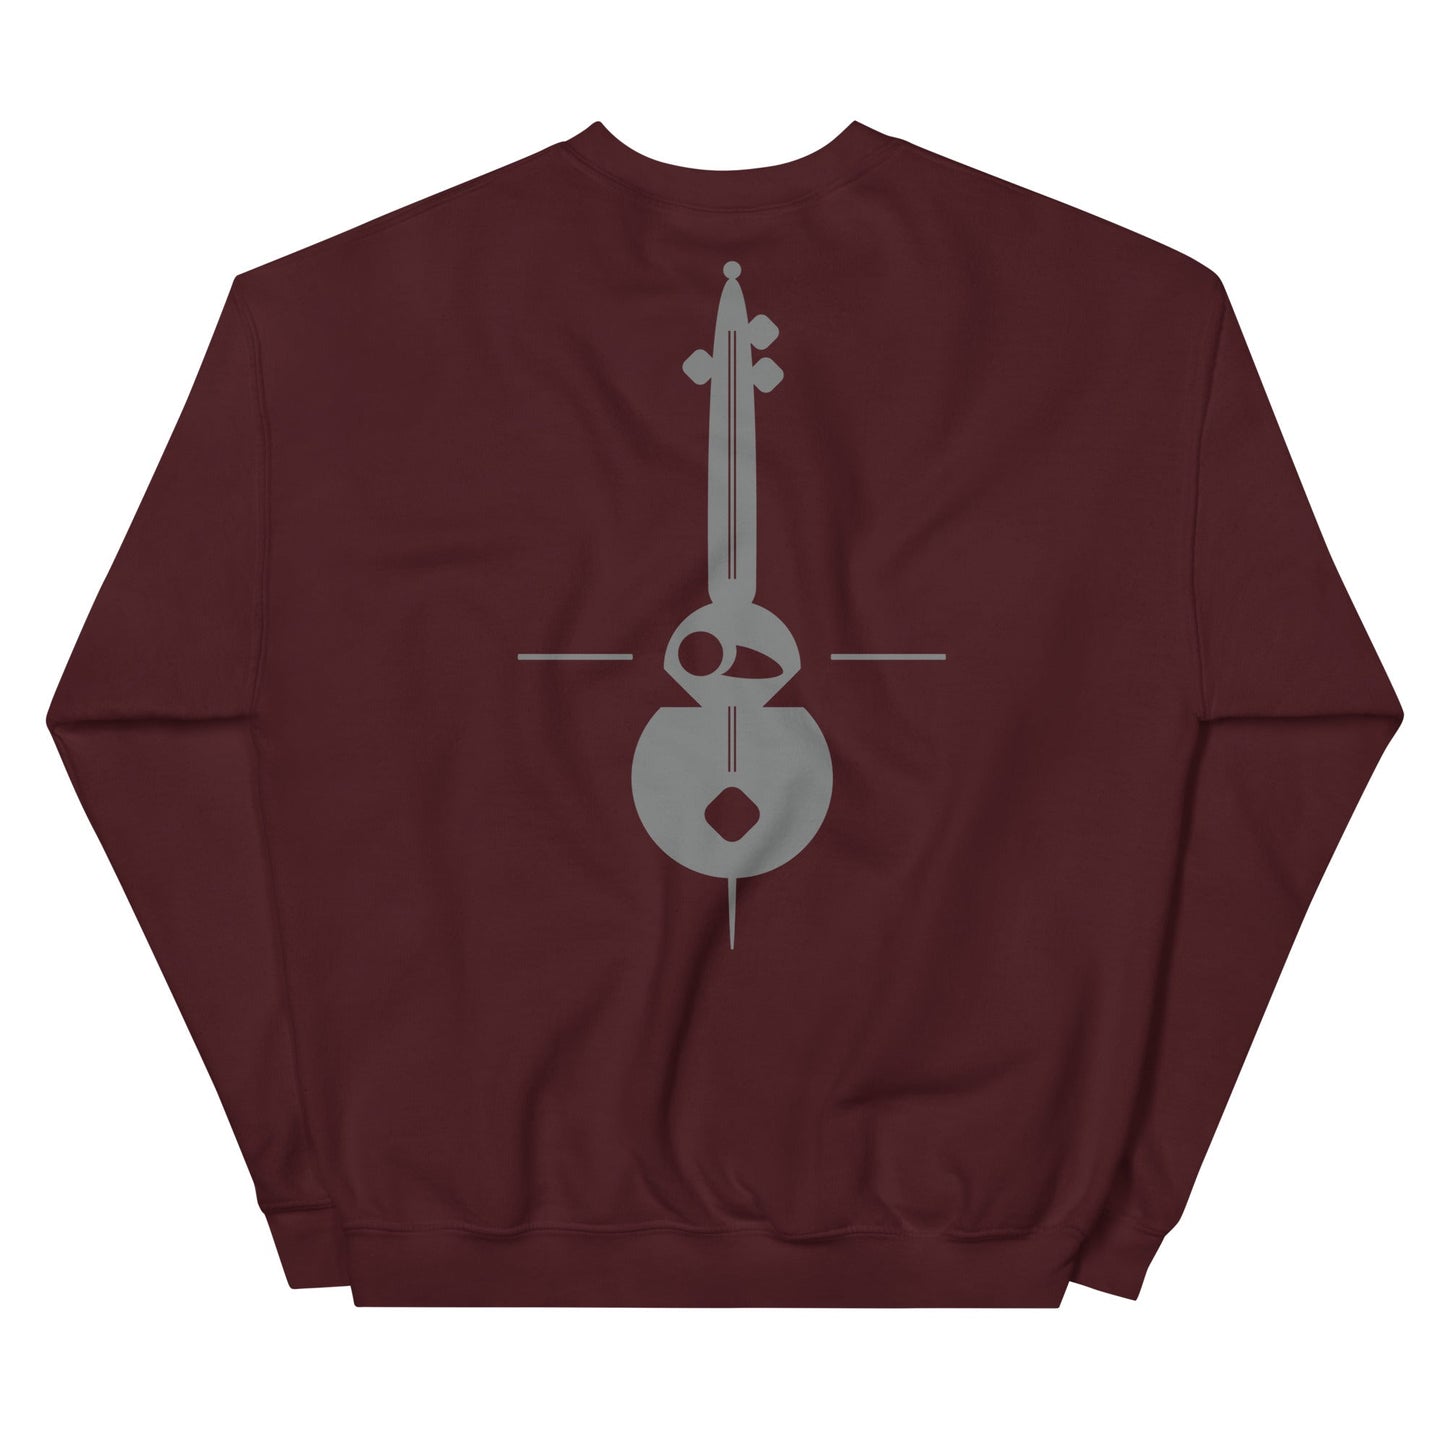 THE MUSIC Unisex Classic Sweatshirt - BONOTEE